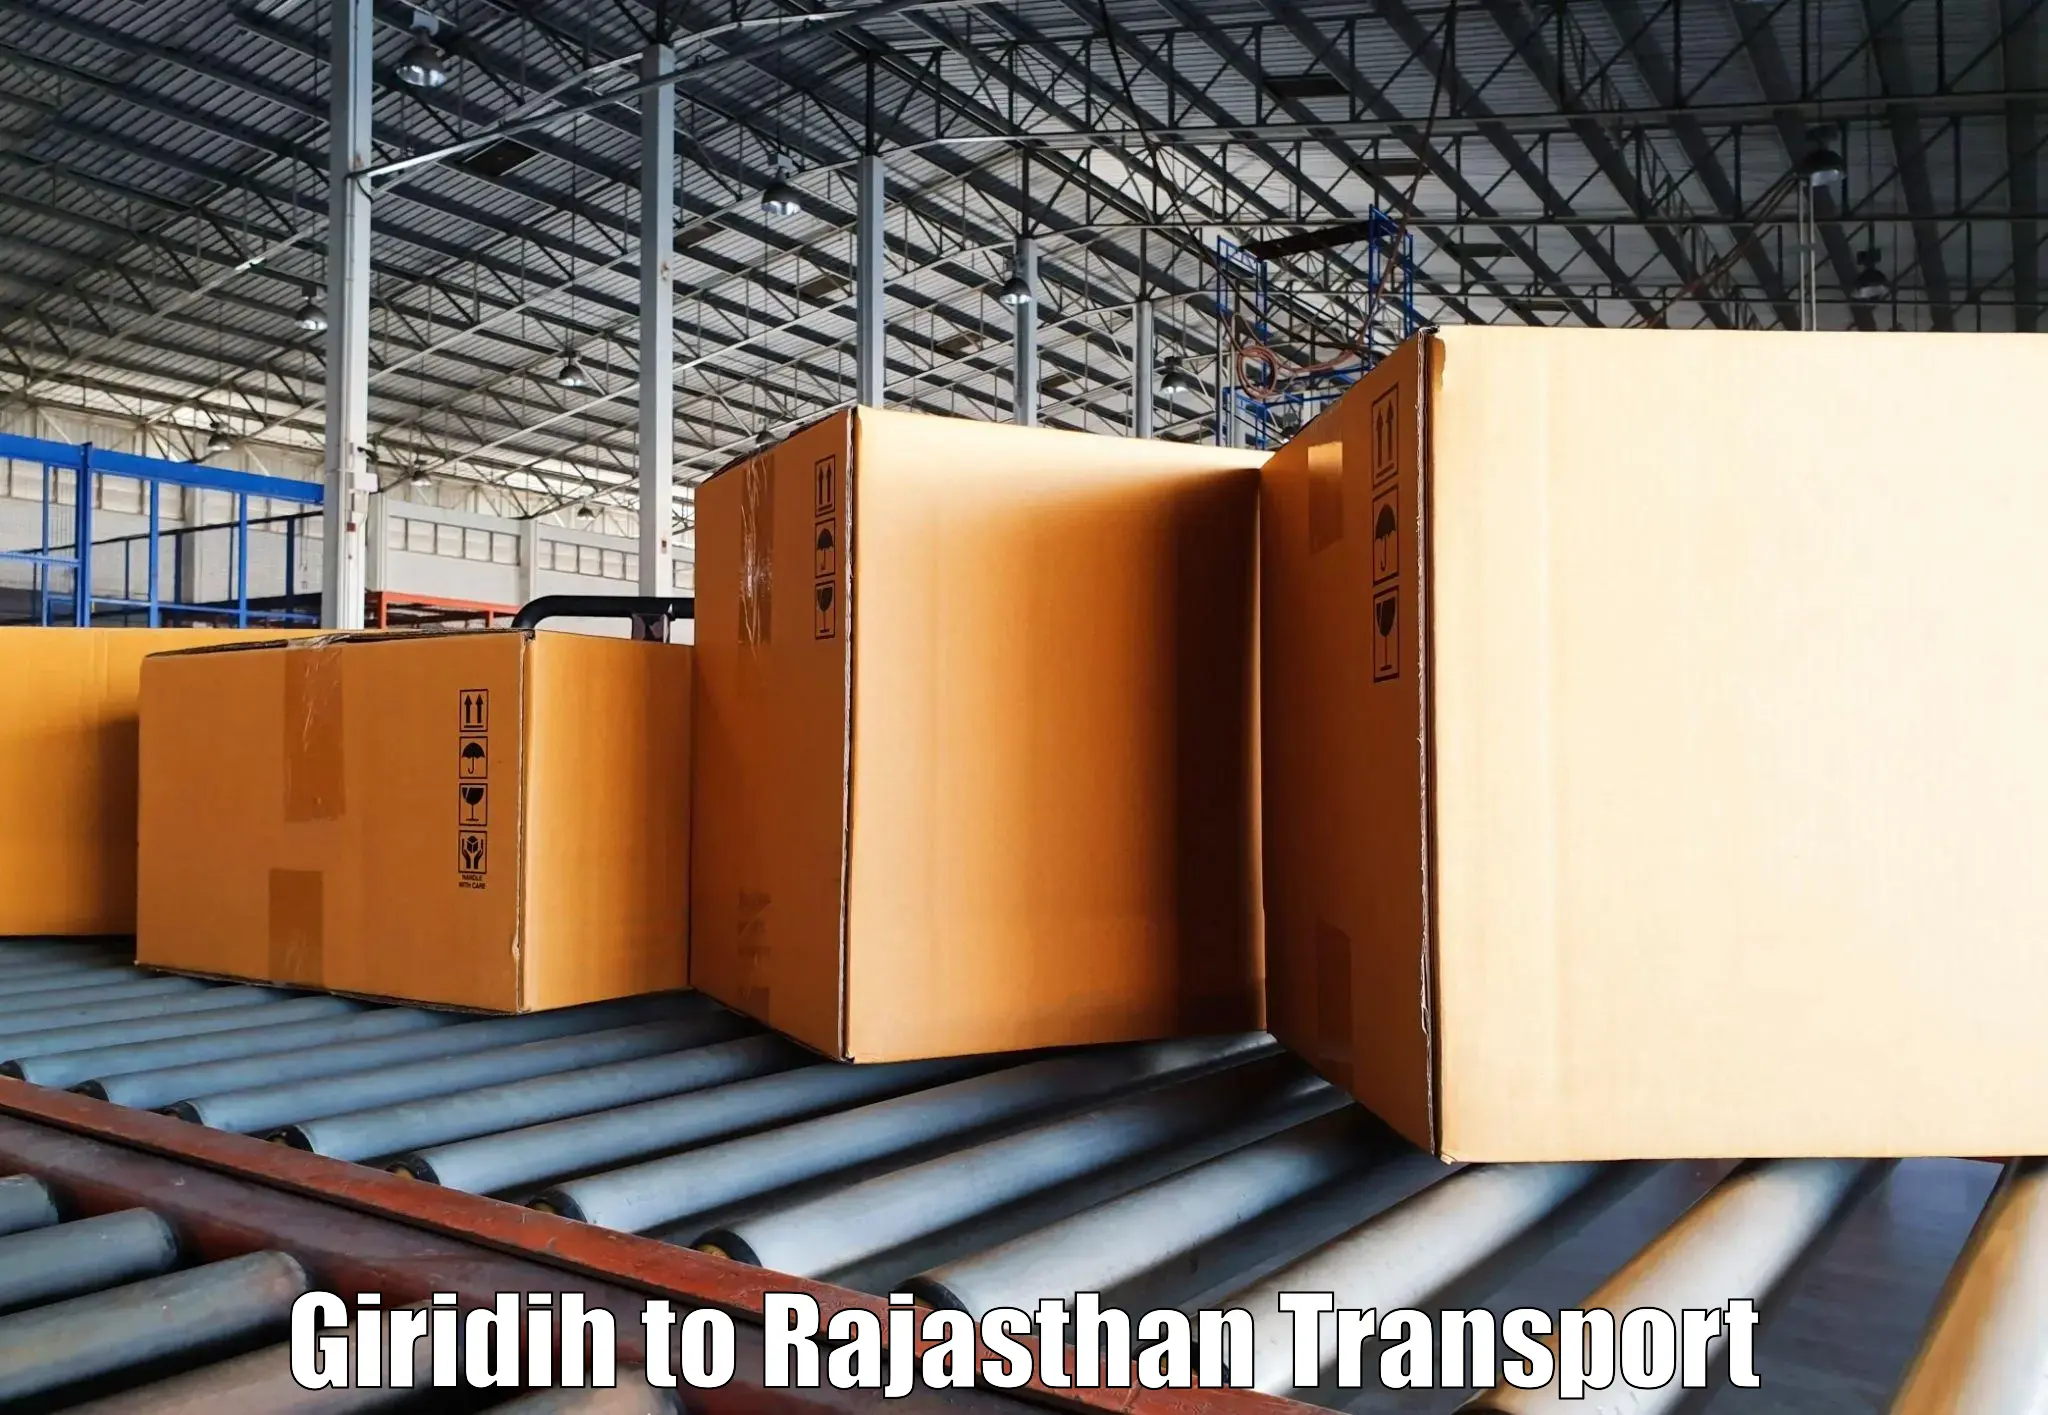 All India transport service Giridih to Tonk